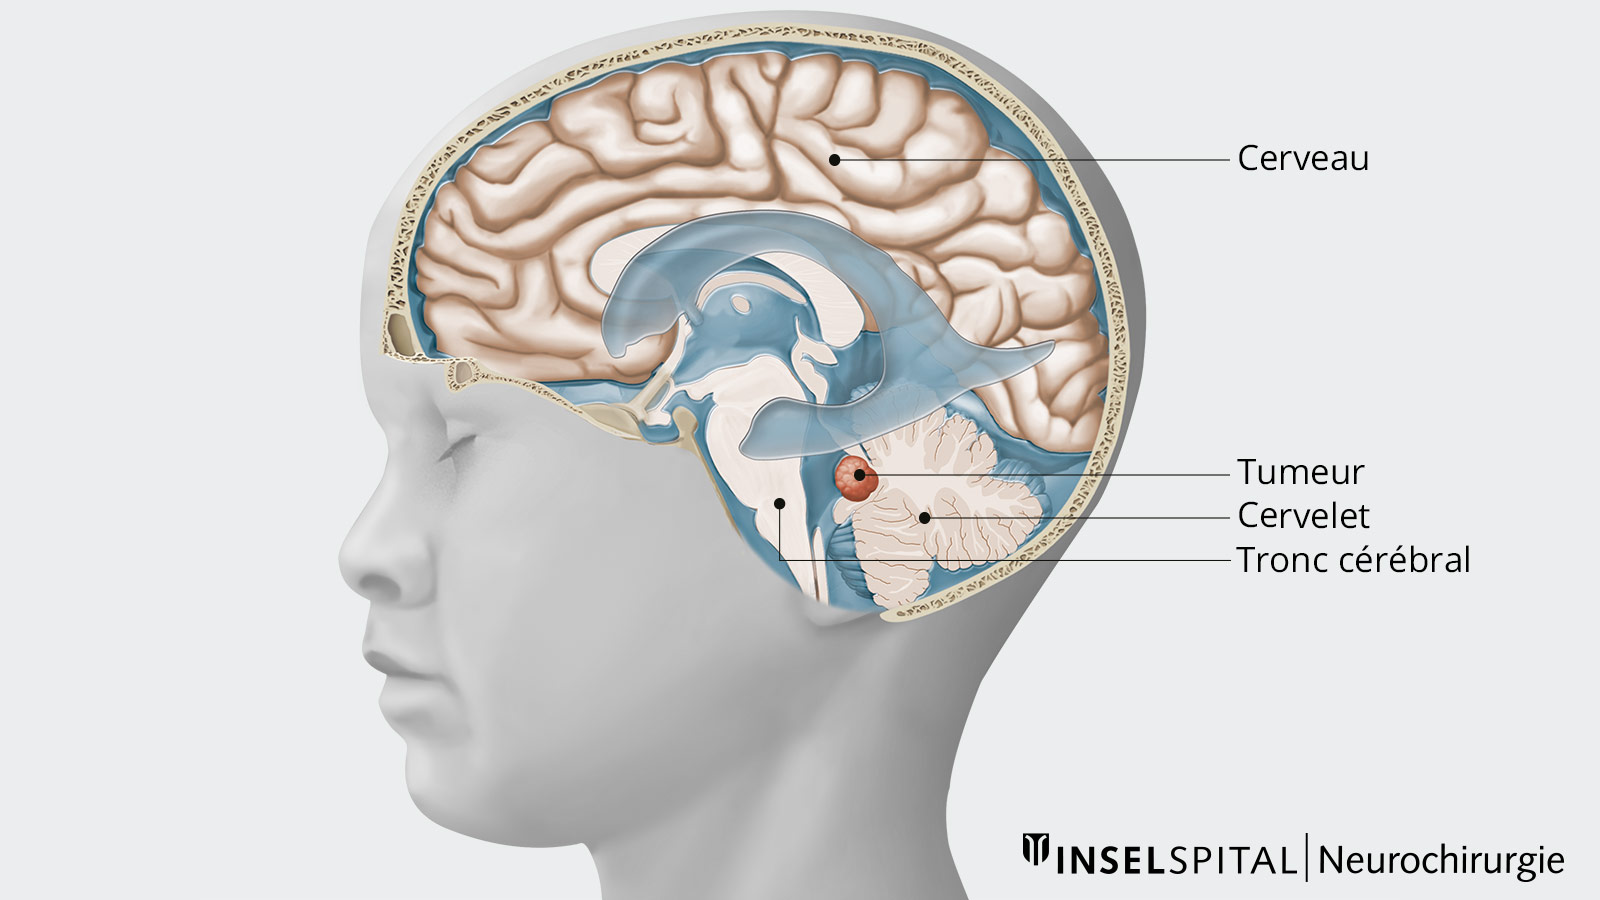 Dessin du crâne en coupe transversale avec le cerveau, le cervelet, le tronc cérébral et la tumeur